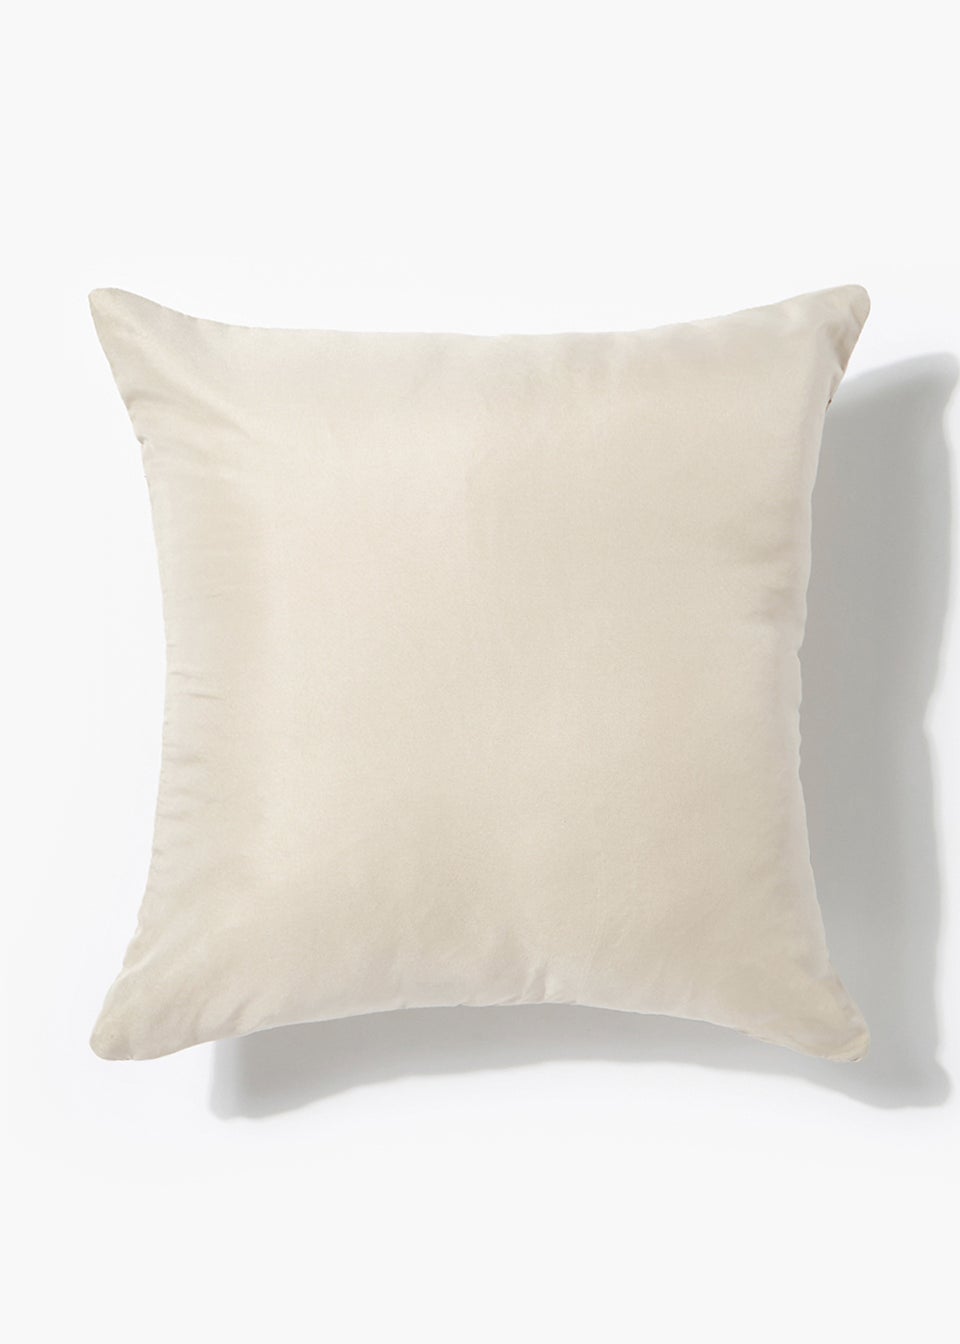 Natural Pinsonic Cushion (40cm x 40cm)